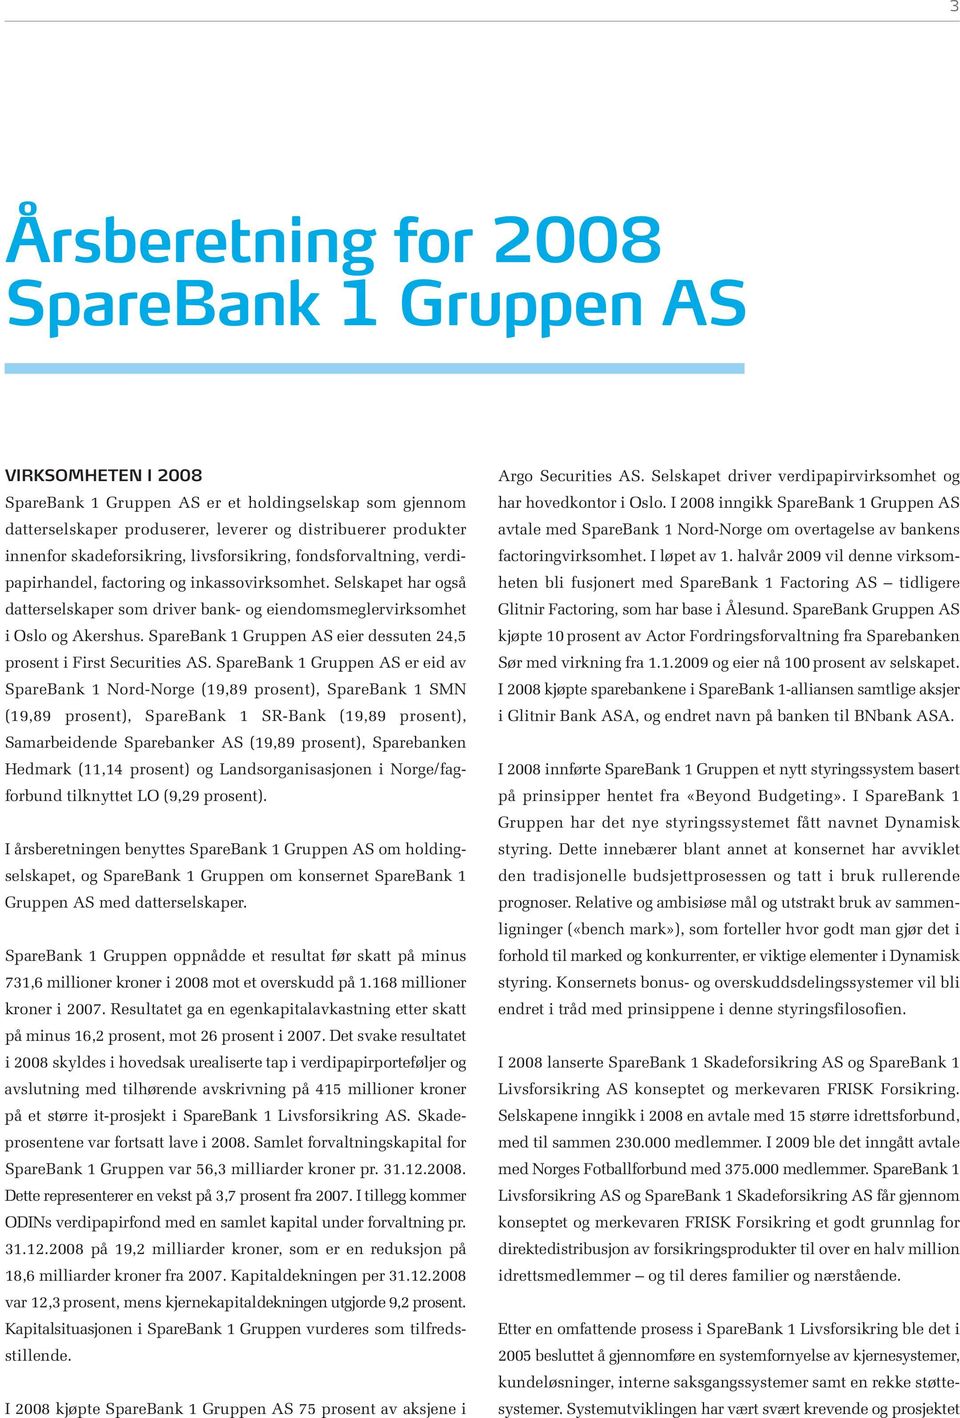 SpareBank 1 Gruppen AS eier dessuten 24,5 prosent i First Securities AS.